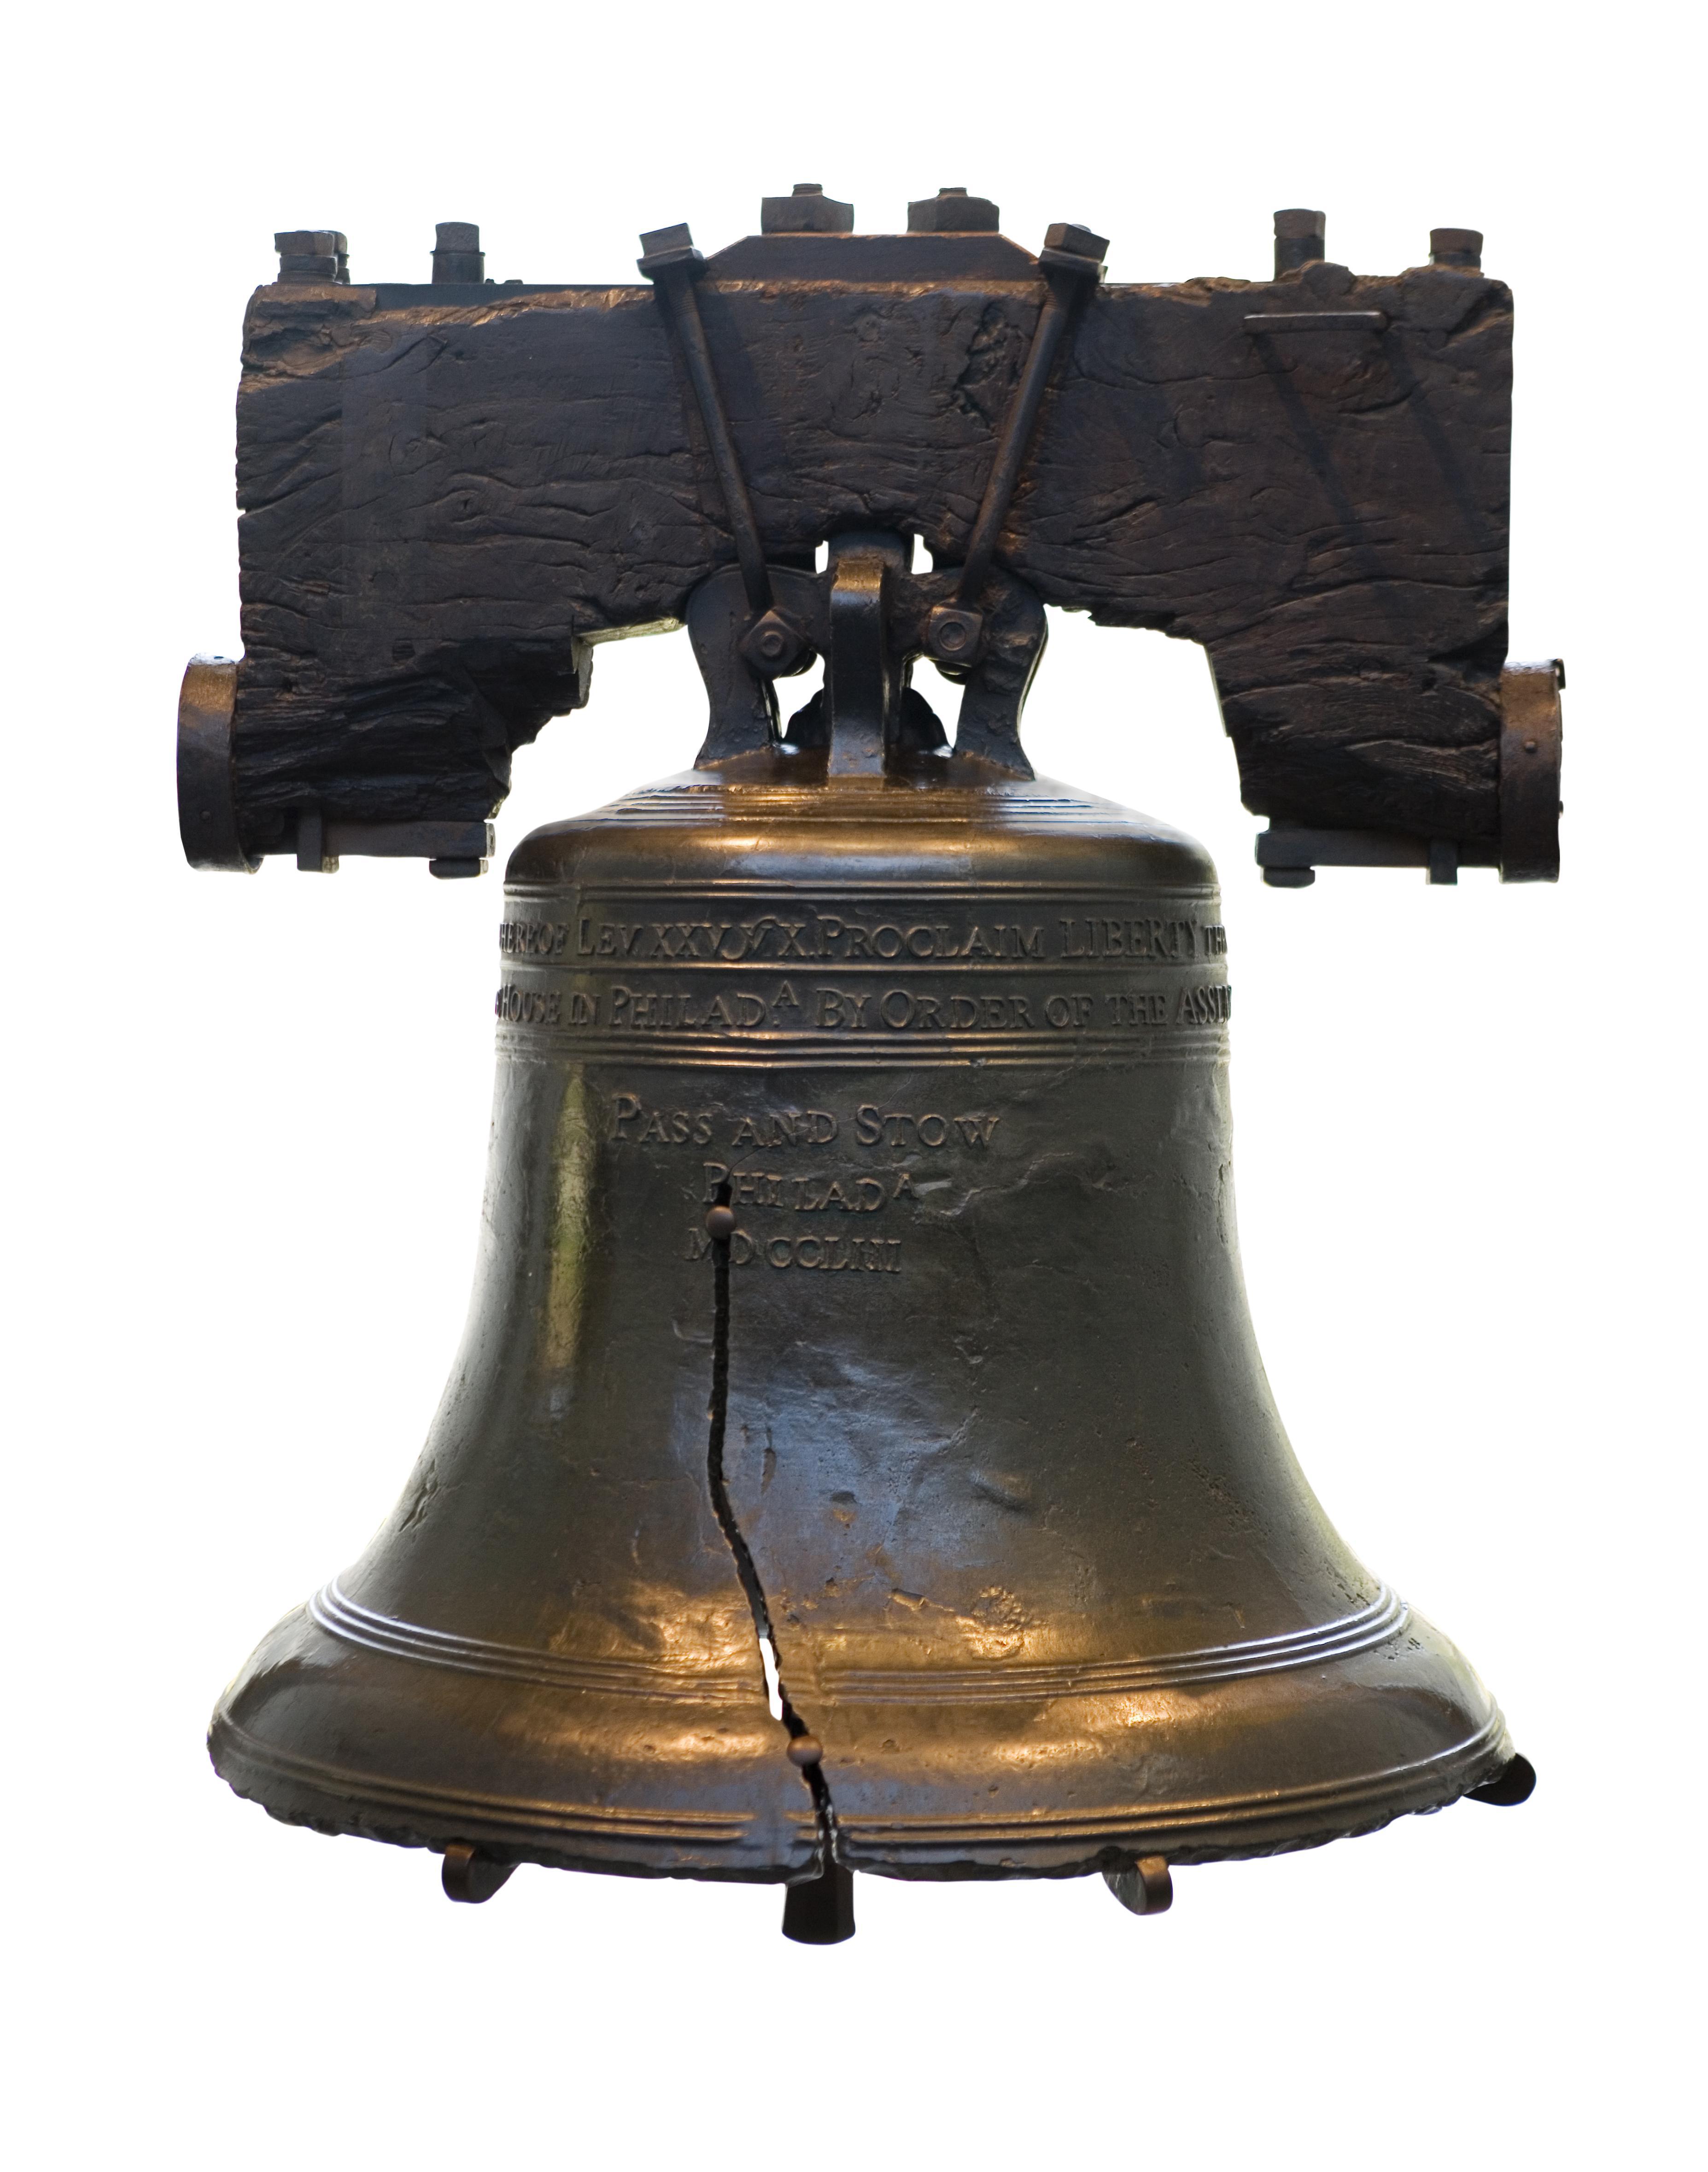 Still life of Liberty Bell